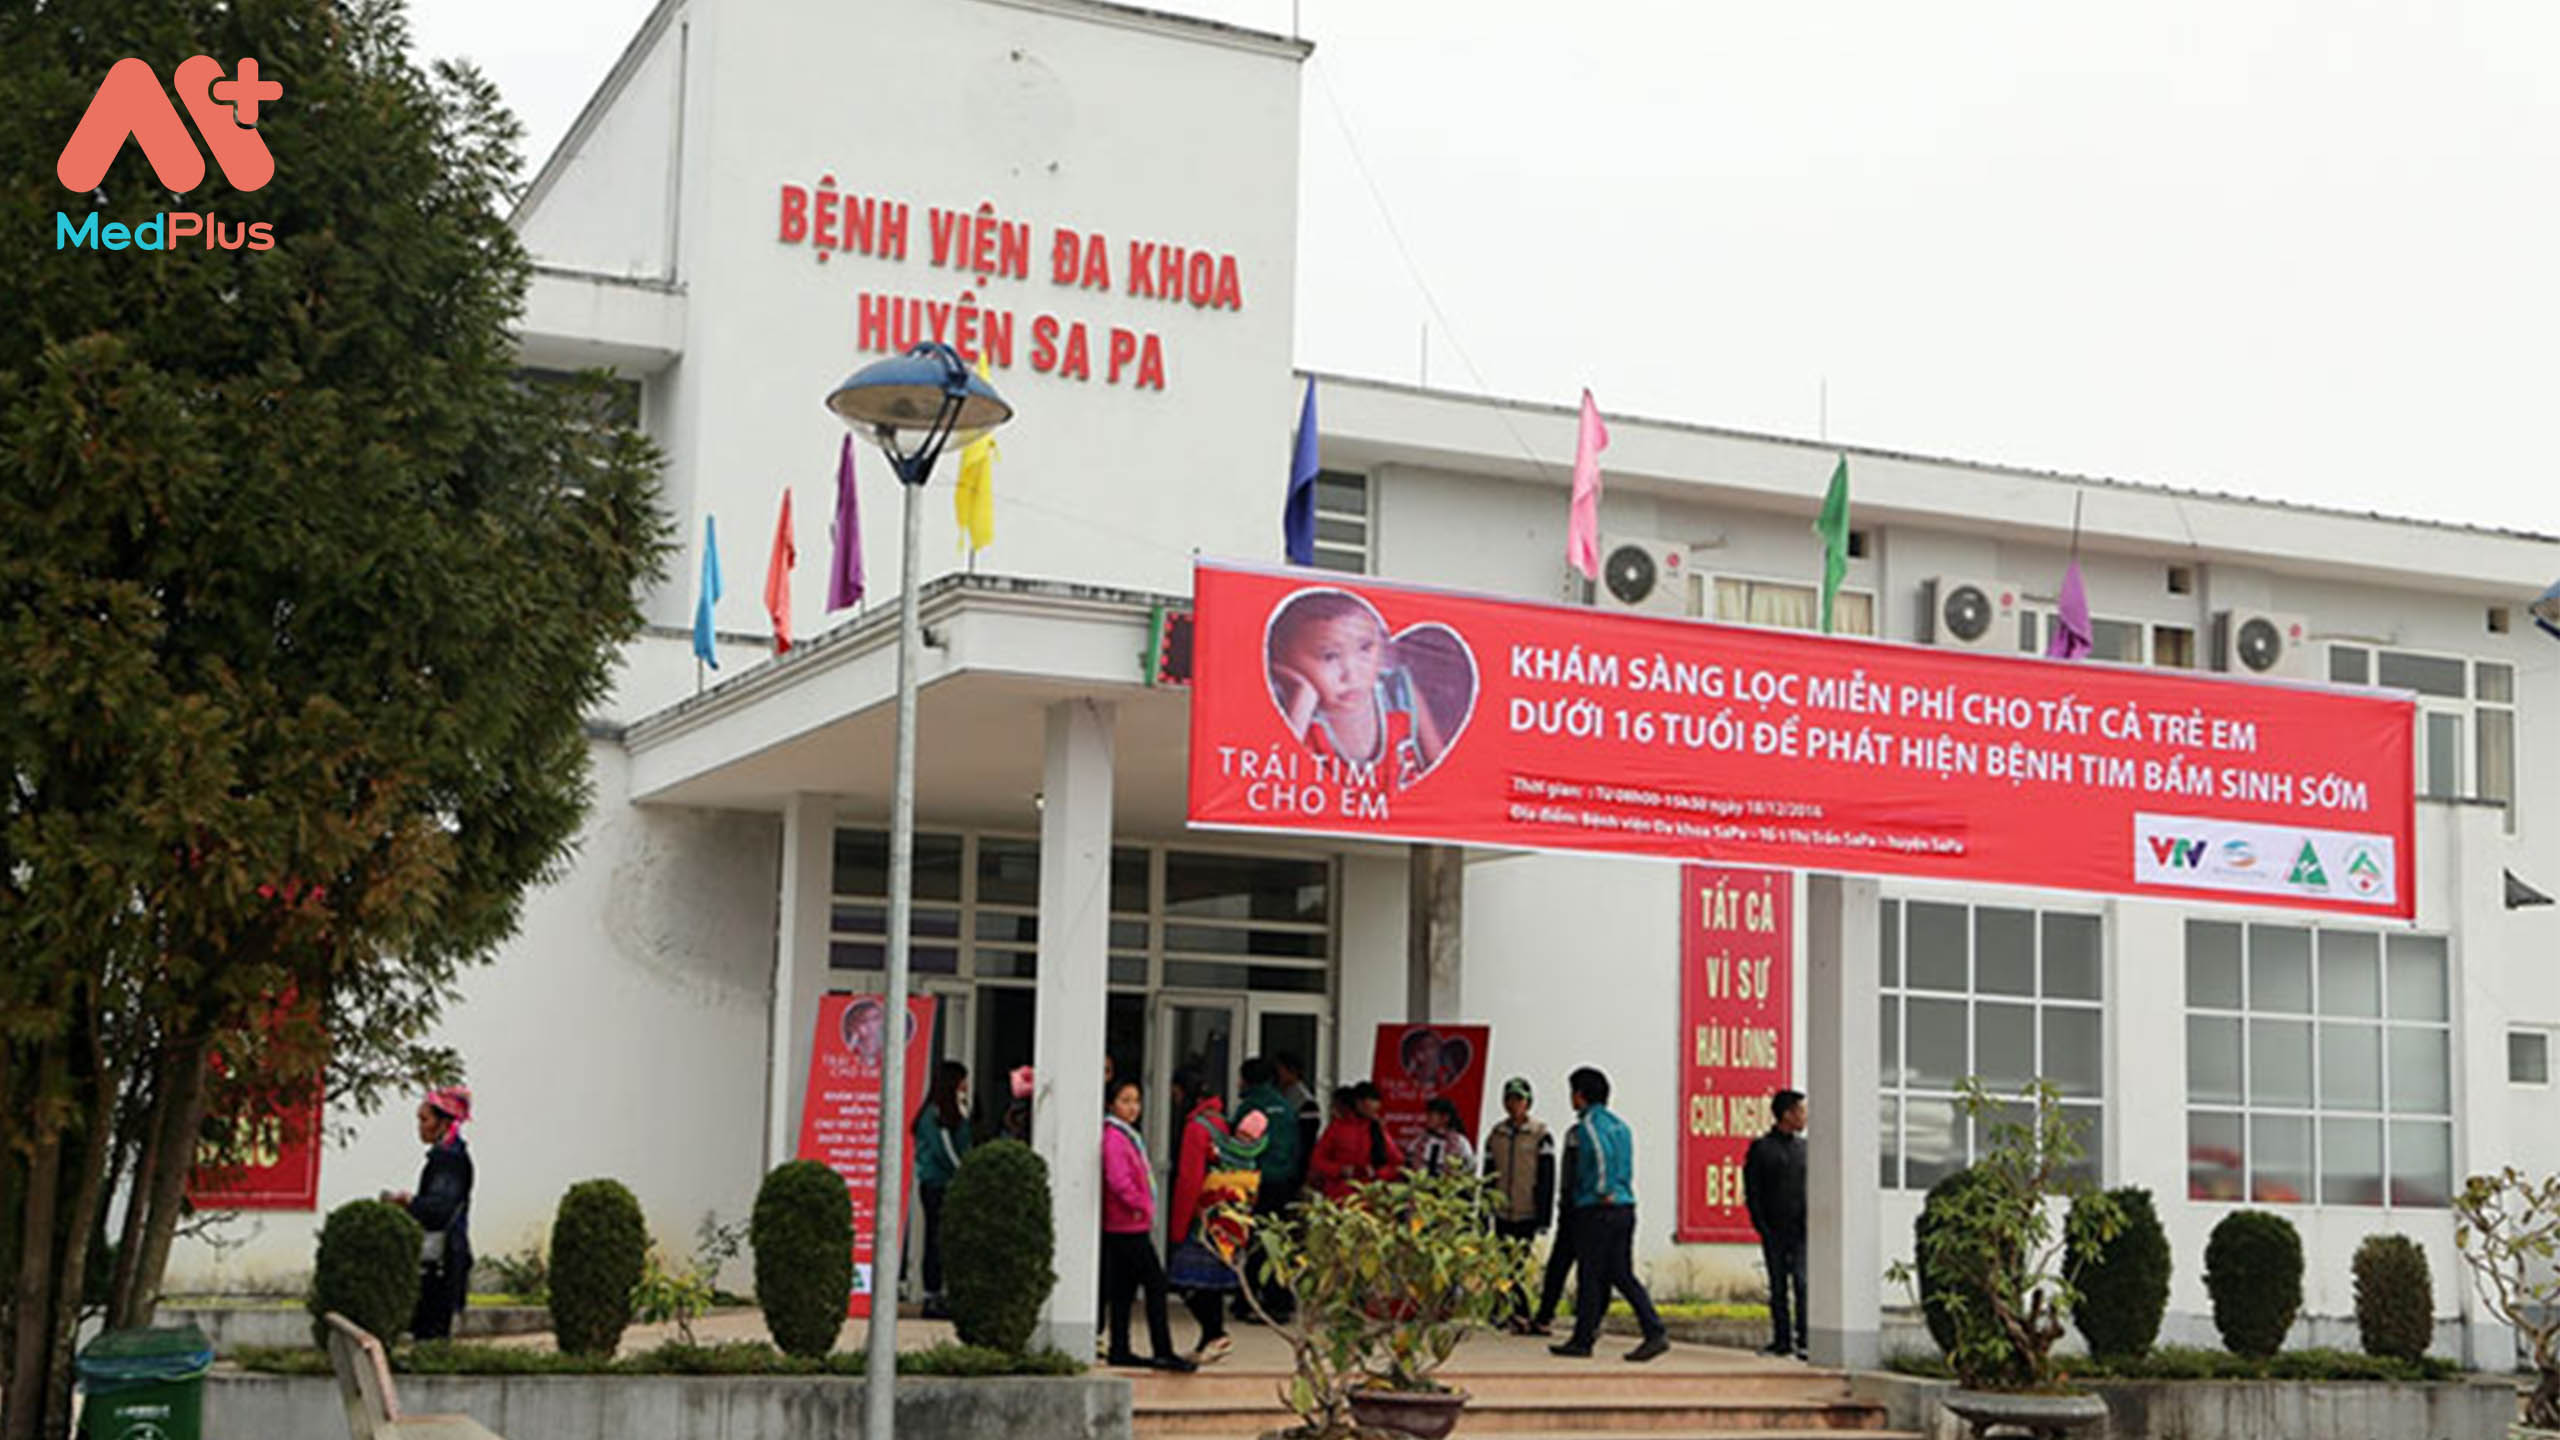 Bệnh viện đa khoa huyện Sa Pa: CẬP NHẬT THÔNG TIN